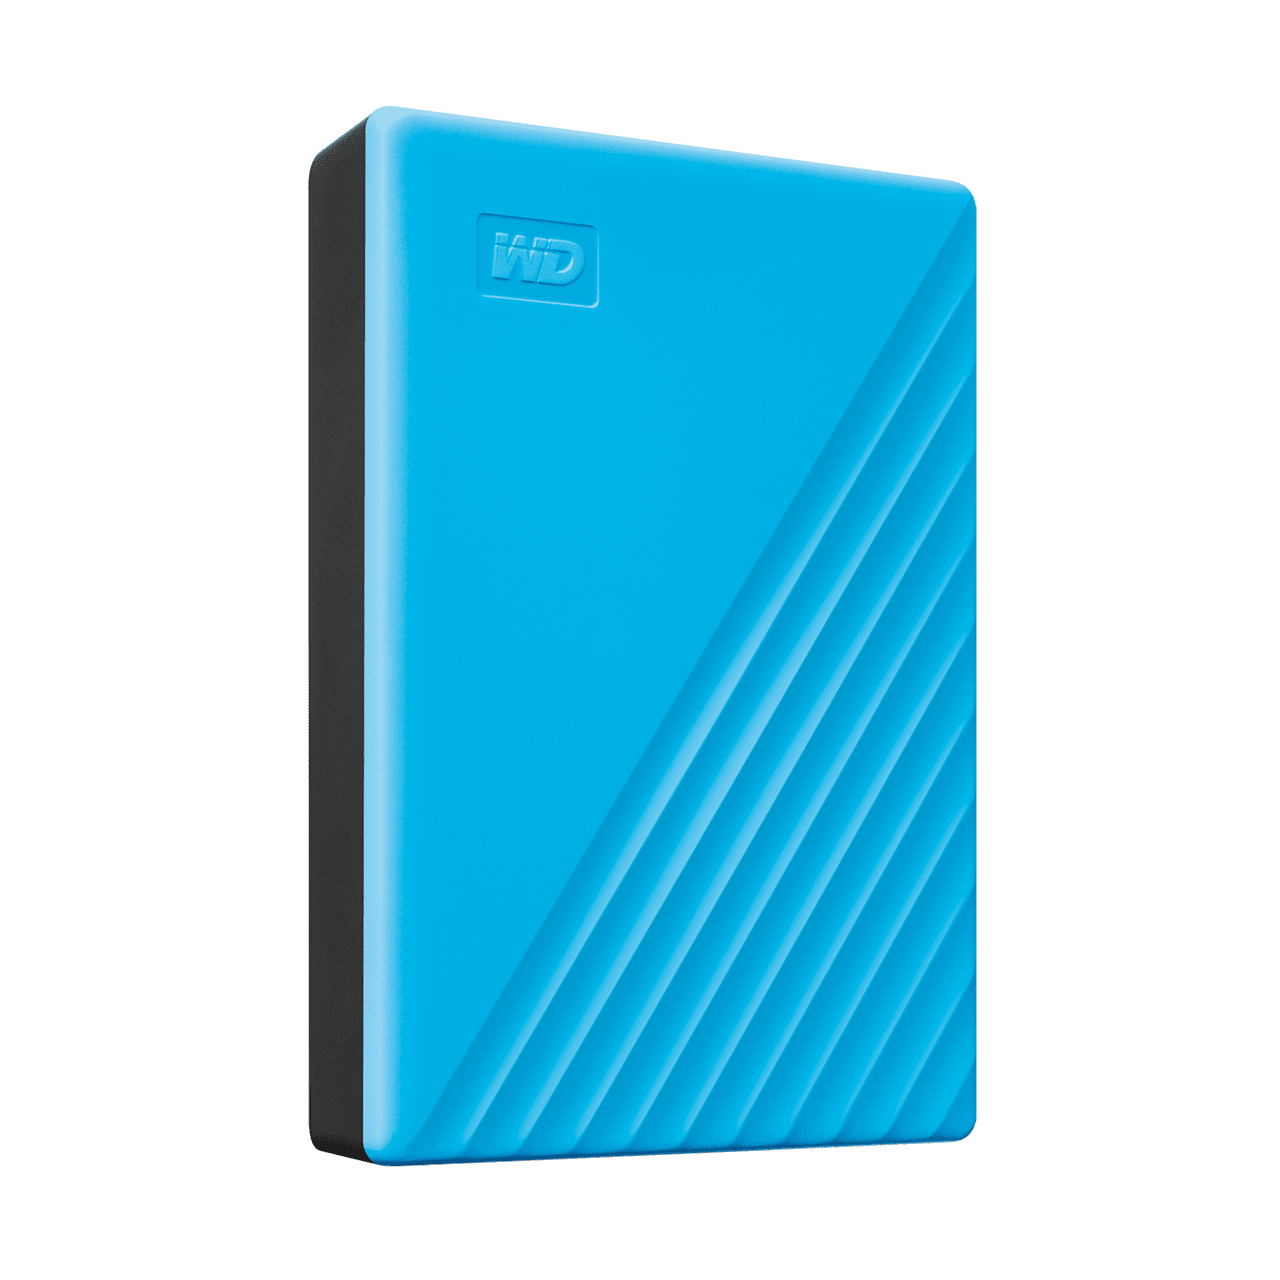 WD MyPassport 4Tb Portable USB 3.2 Hard Drive (Blue)